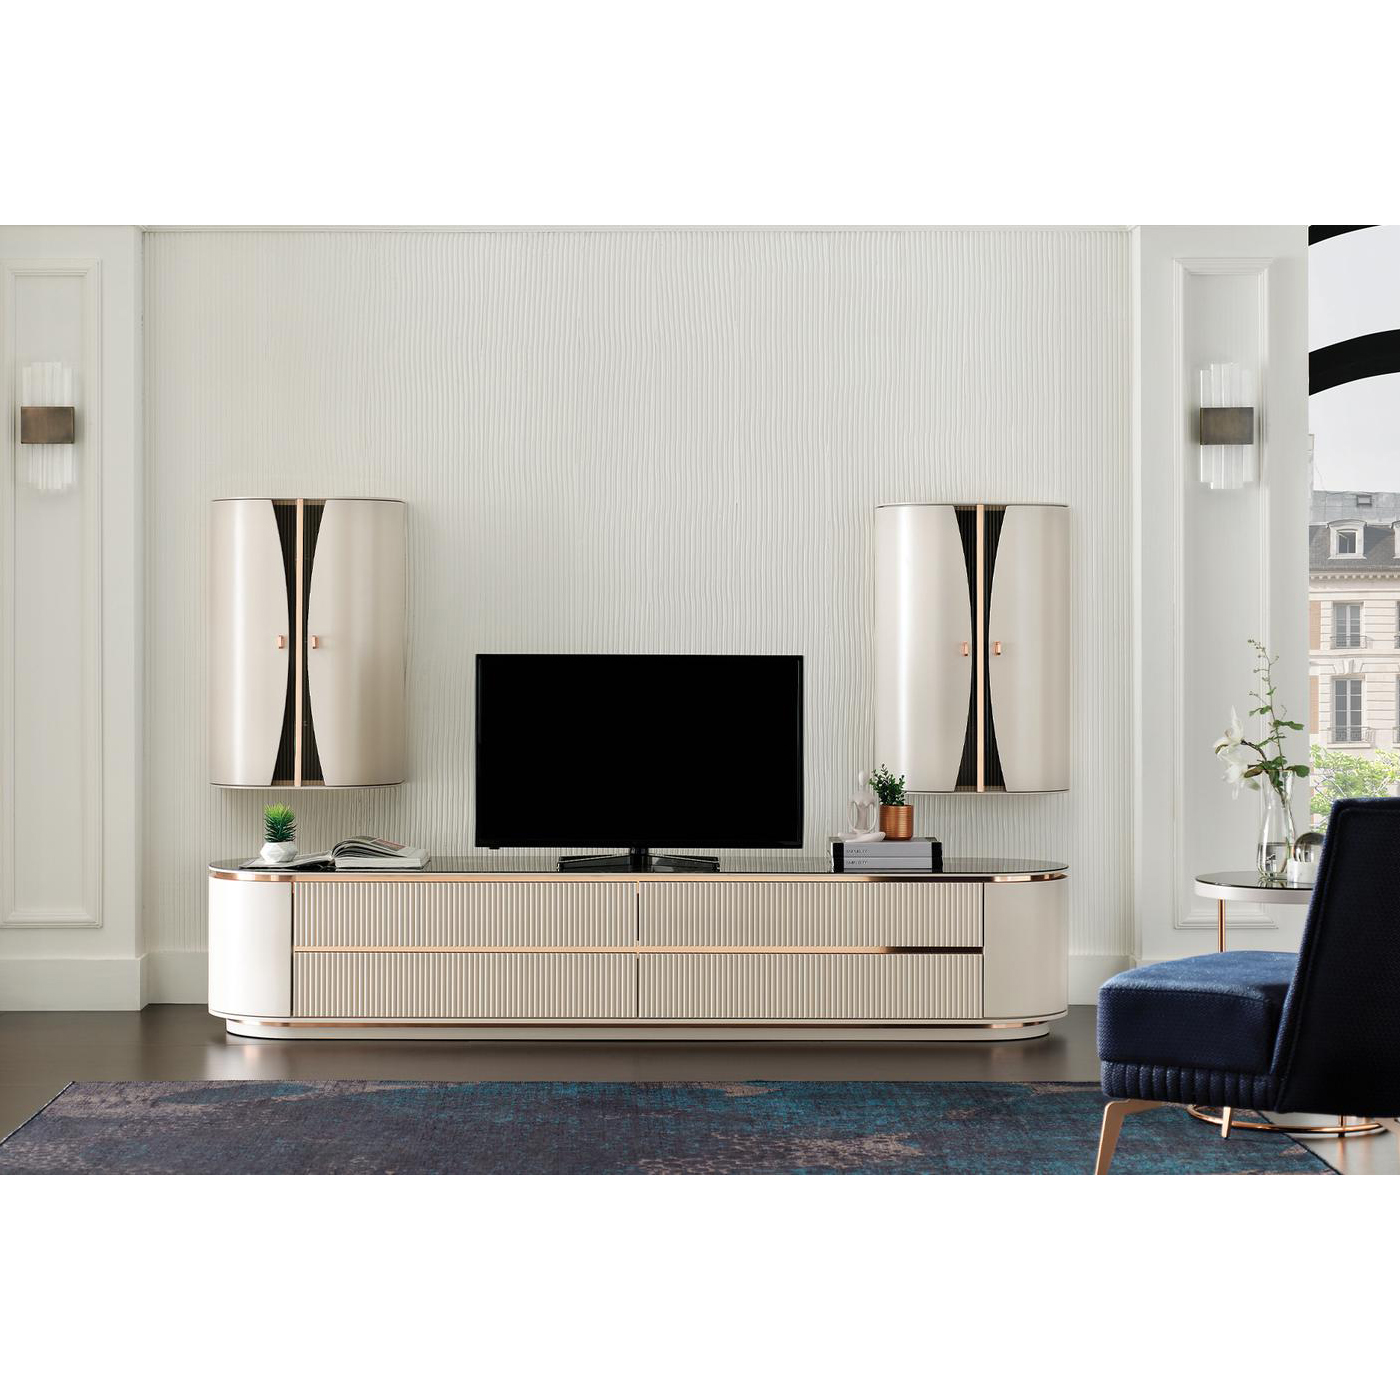 Тумба ТВ Enza Home Vienna, размер 242х55х45 см, цвет-пудровый55555000000058